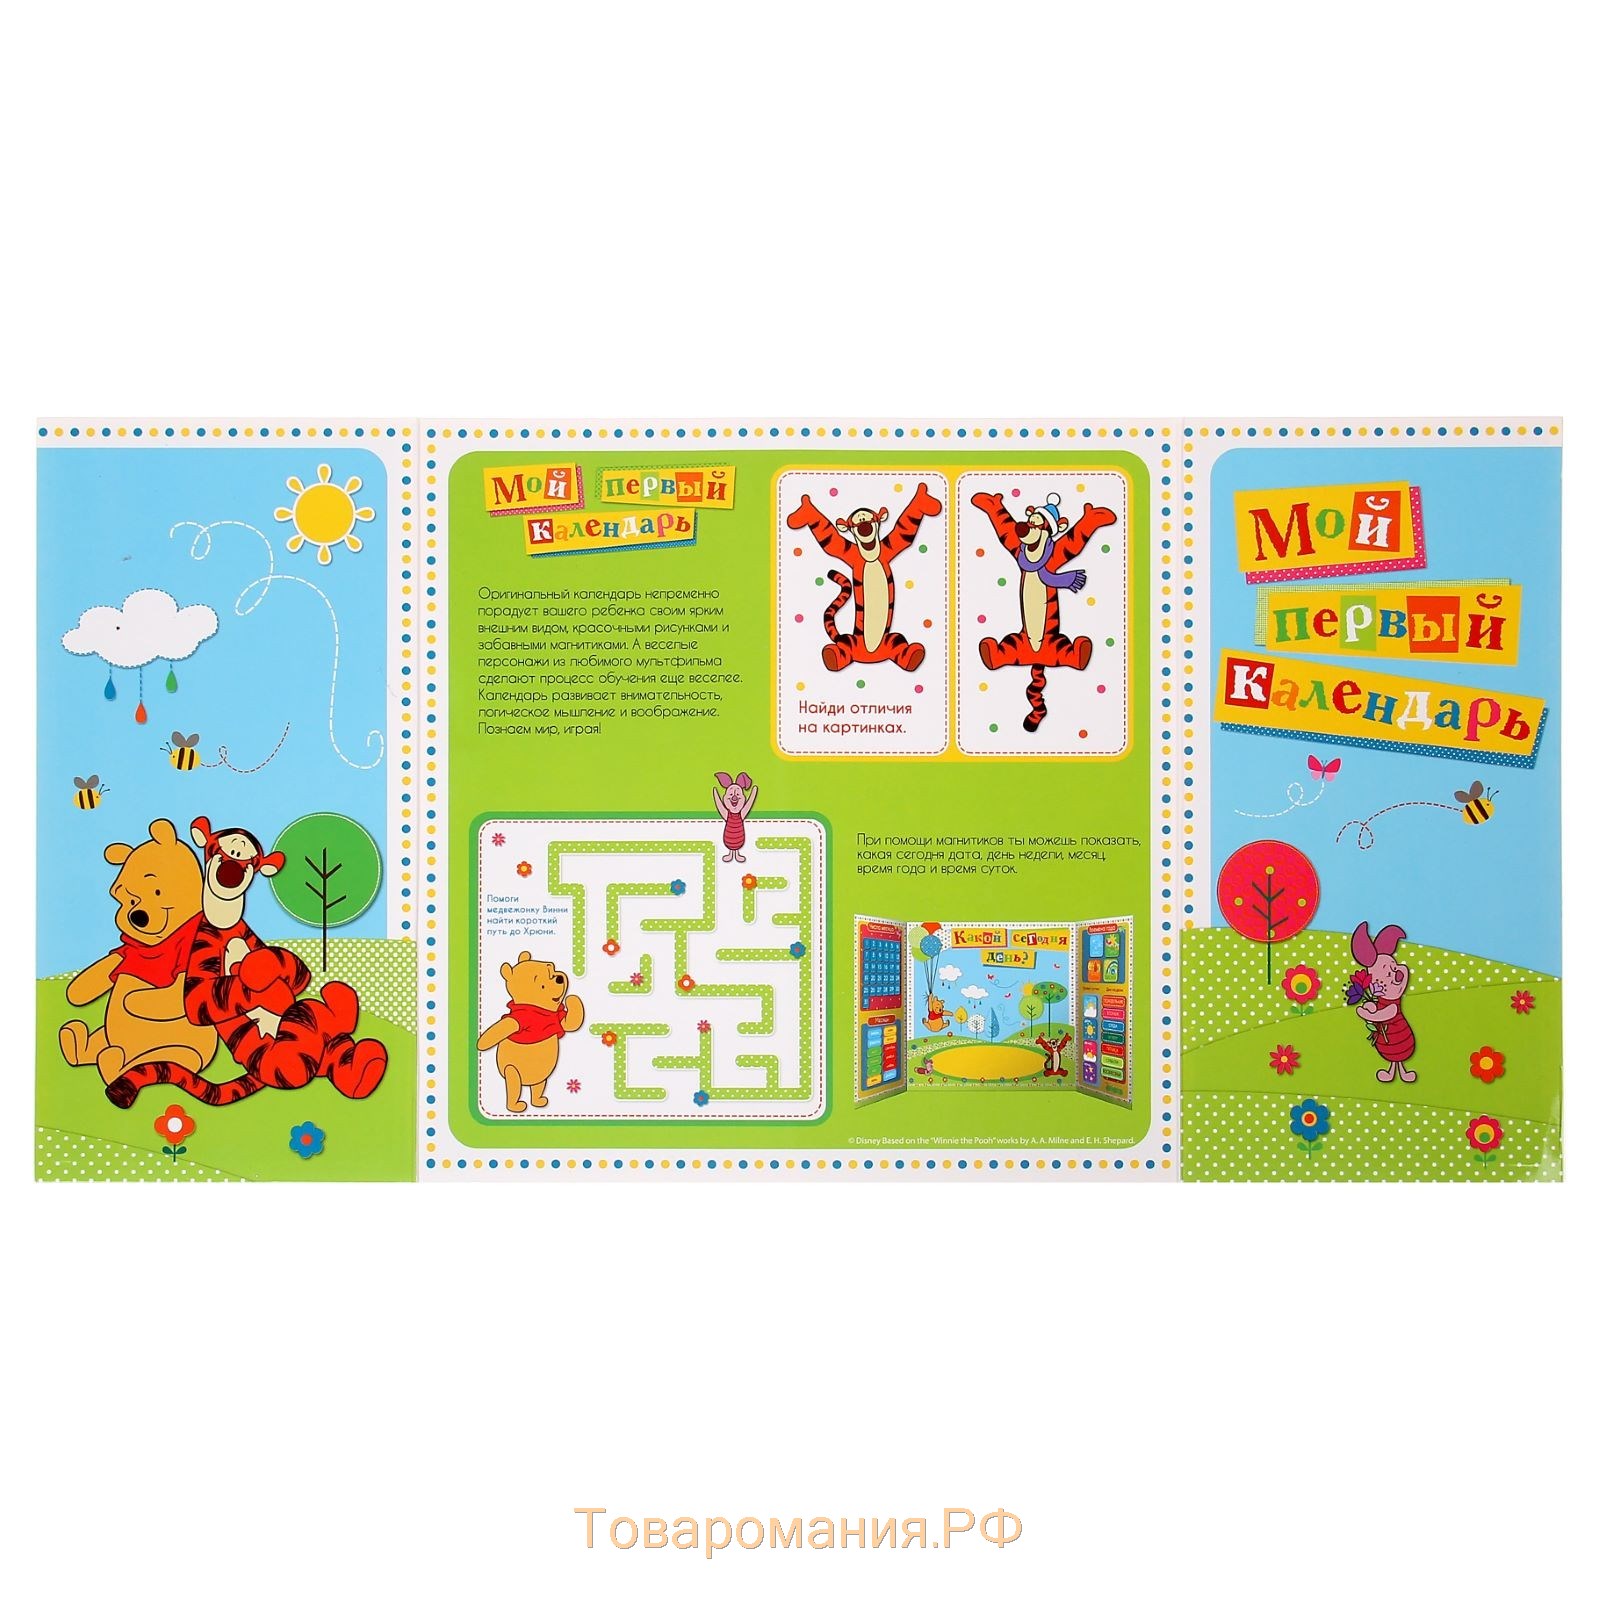 Магнитный календарь "Мой первый календарь" + 2 листа магнитов, Медвежонок Винни и его друзья